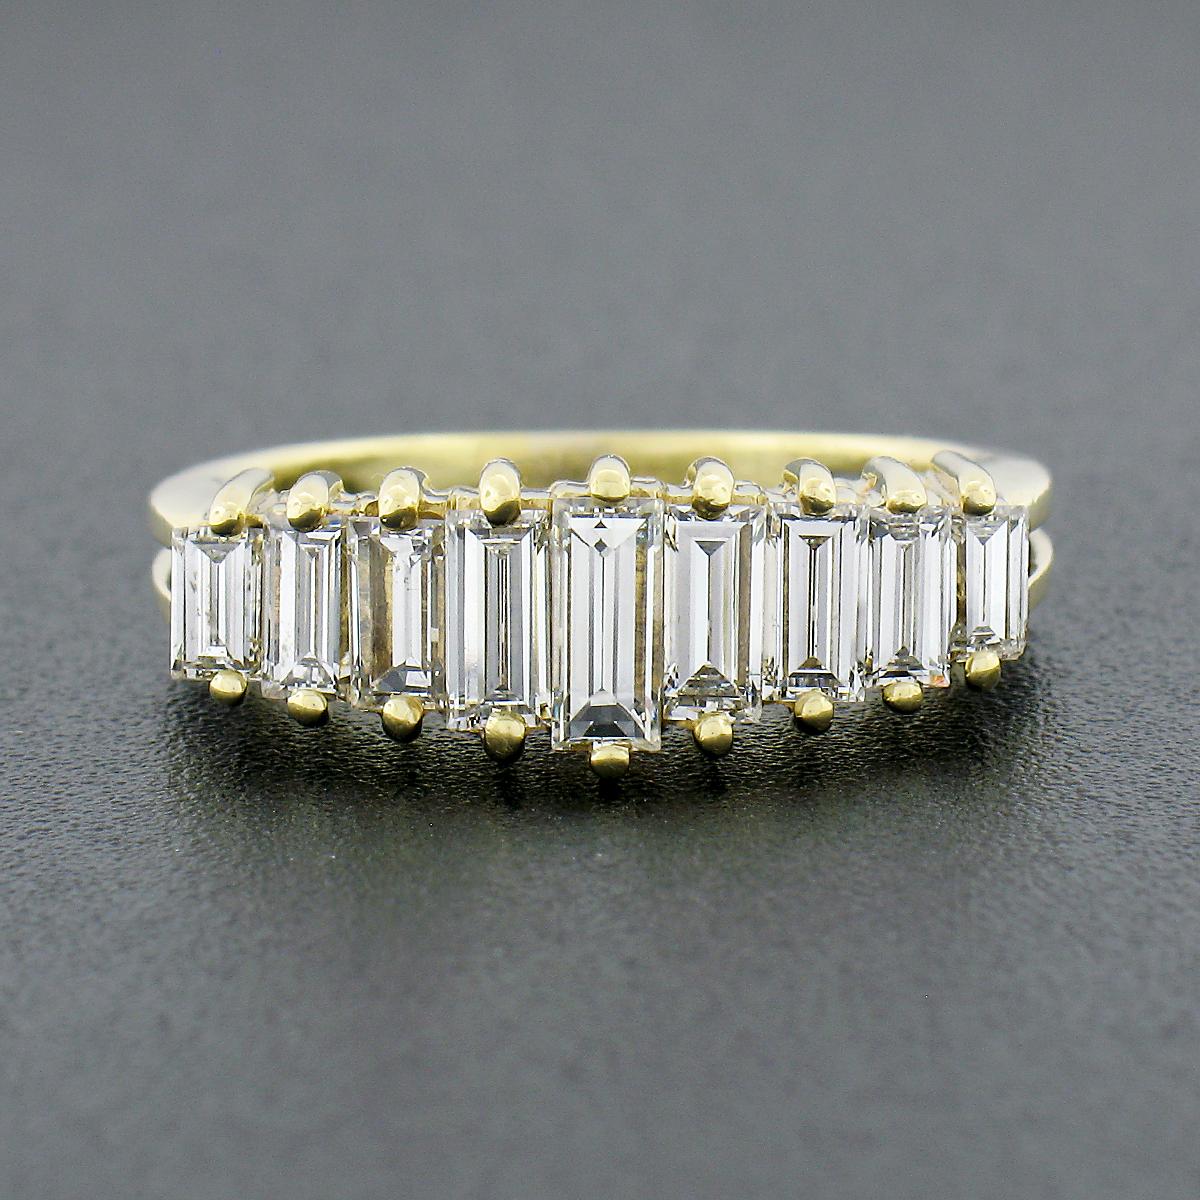 Dieser wunderschöne Vintage-Ring wurde aus massivem 18-karätigem Gelbgold gefertigt und verfügt über 9 Diamanten im Baguetteschliff, die in einer Pyramide auf der Oberseite angeordnet sind. Die feinen Diamanten sind in Größe und Höhe perfekt